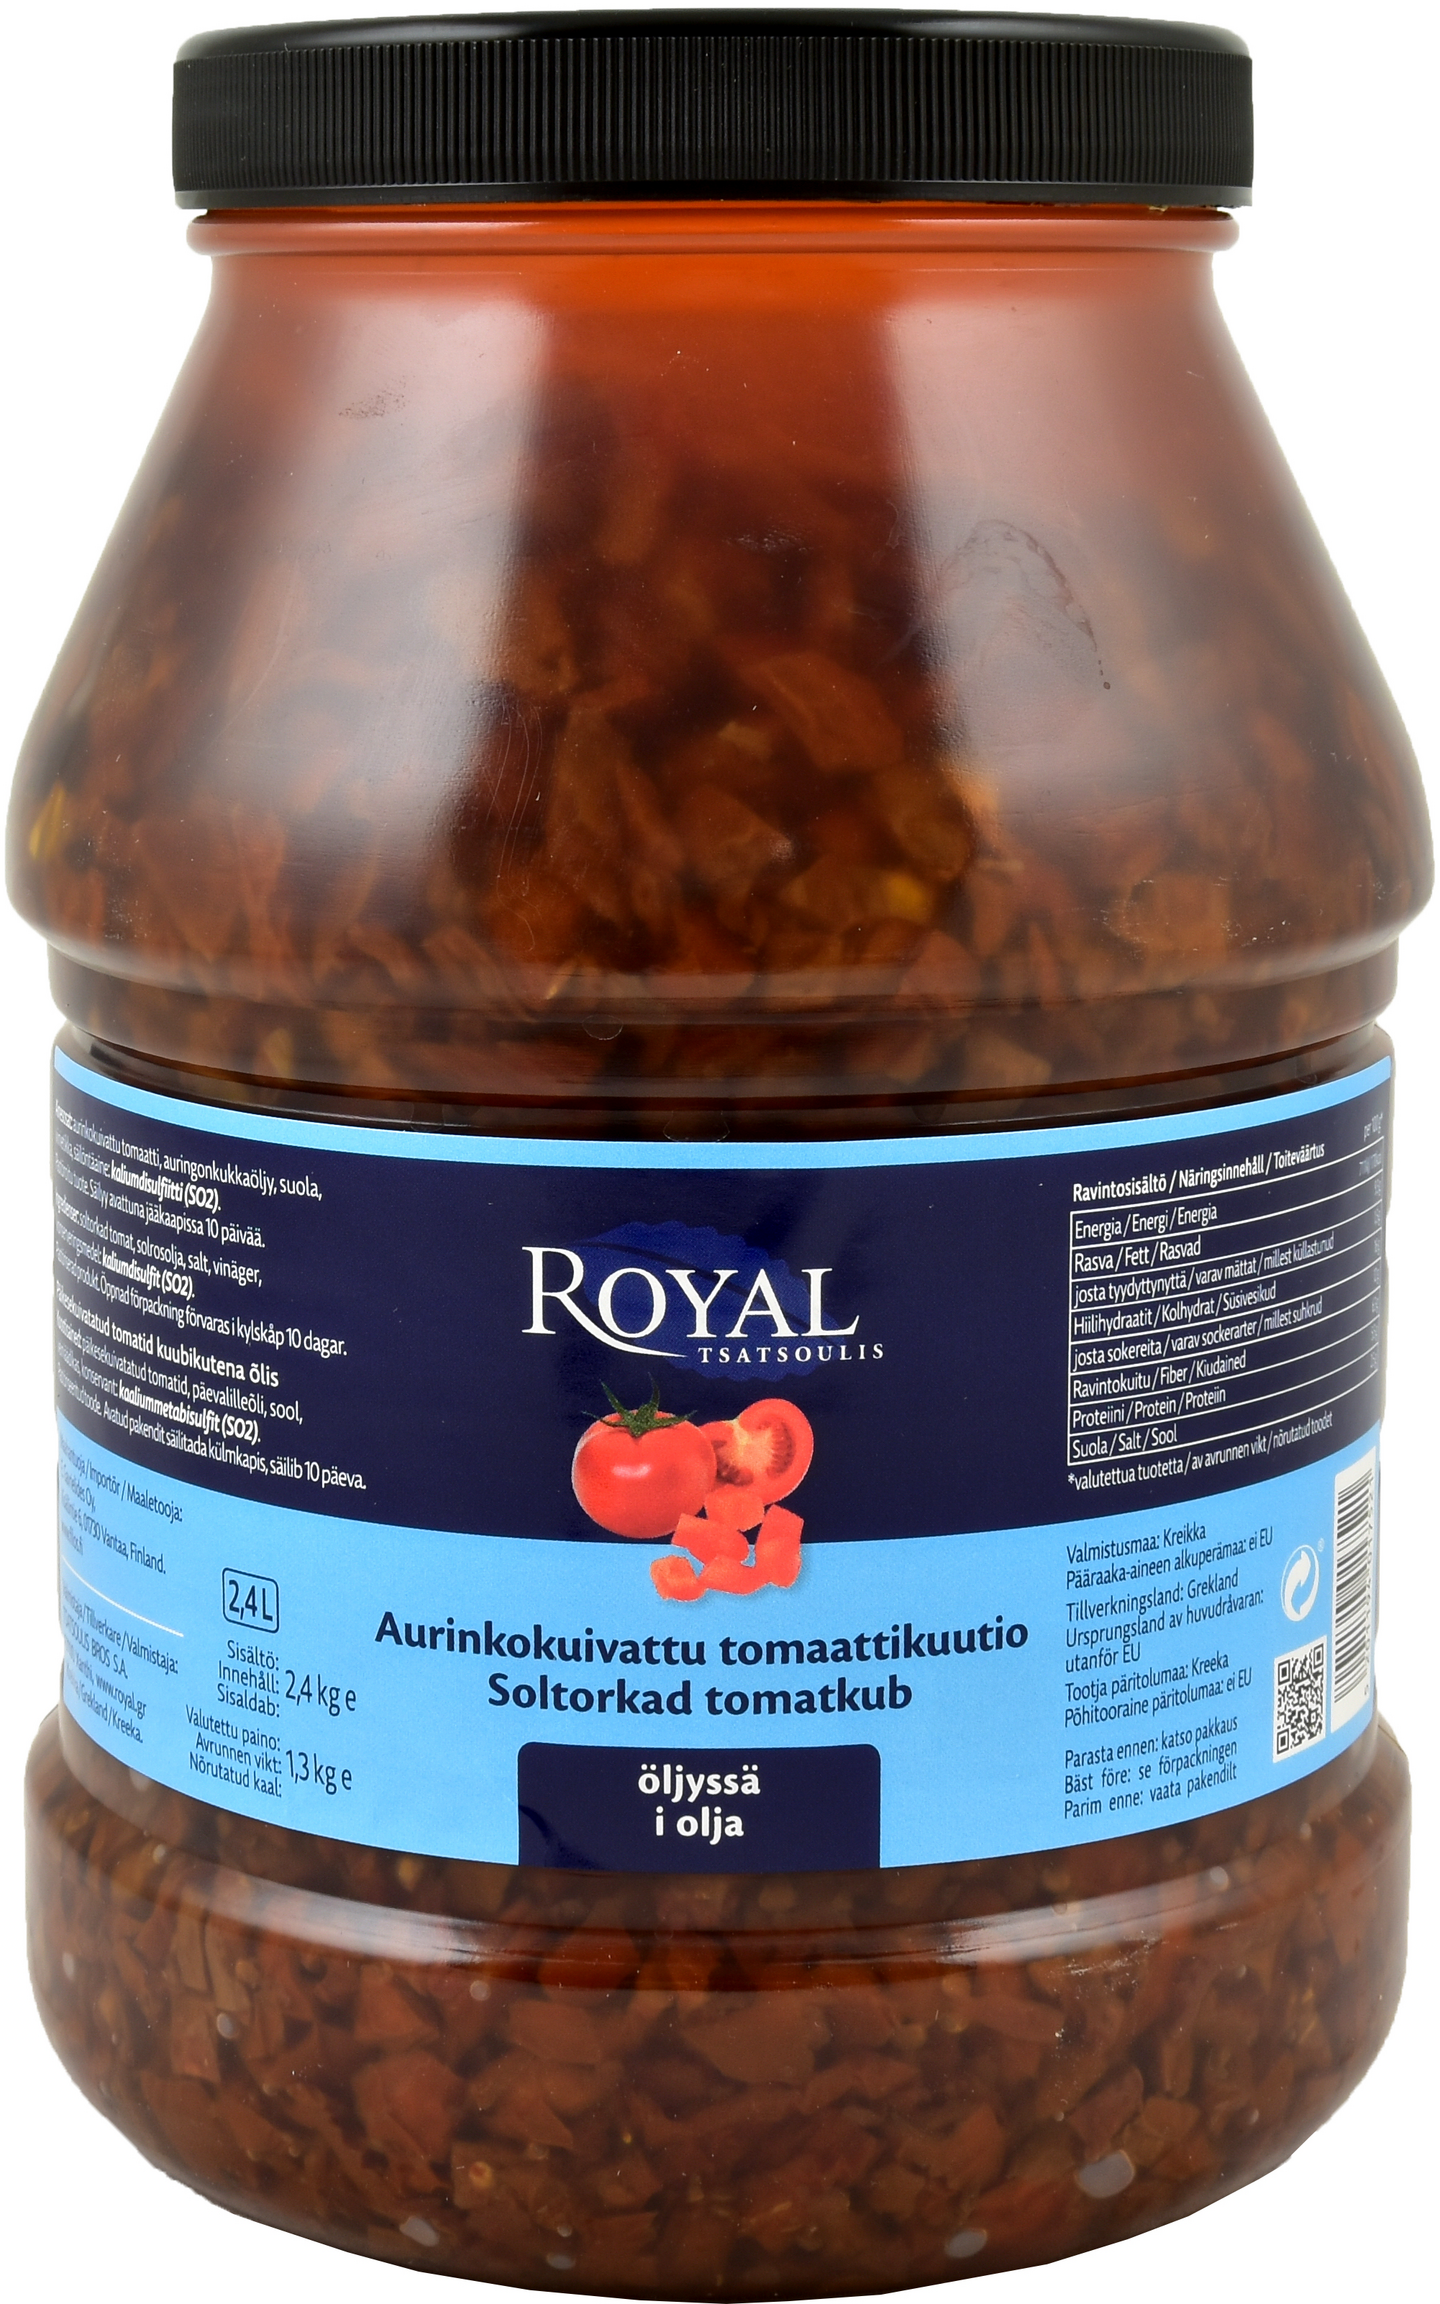 Royal aurinkokuivattu tomaattikuutio öljyssä 2,4/1,3kg